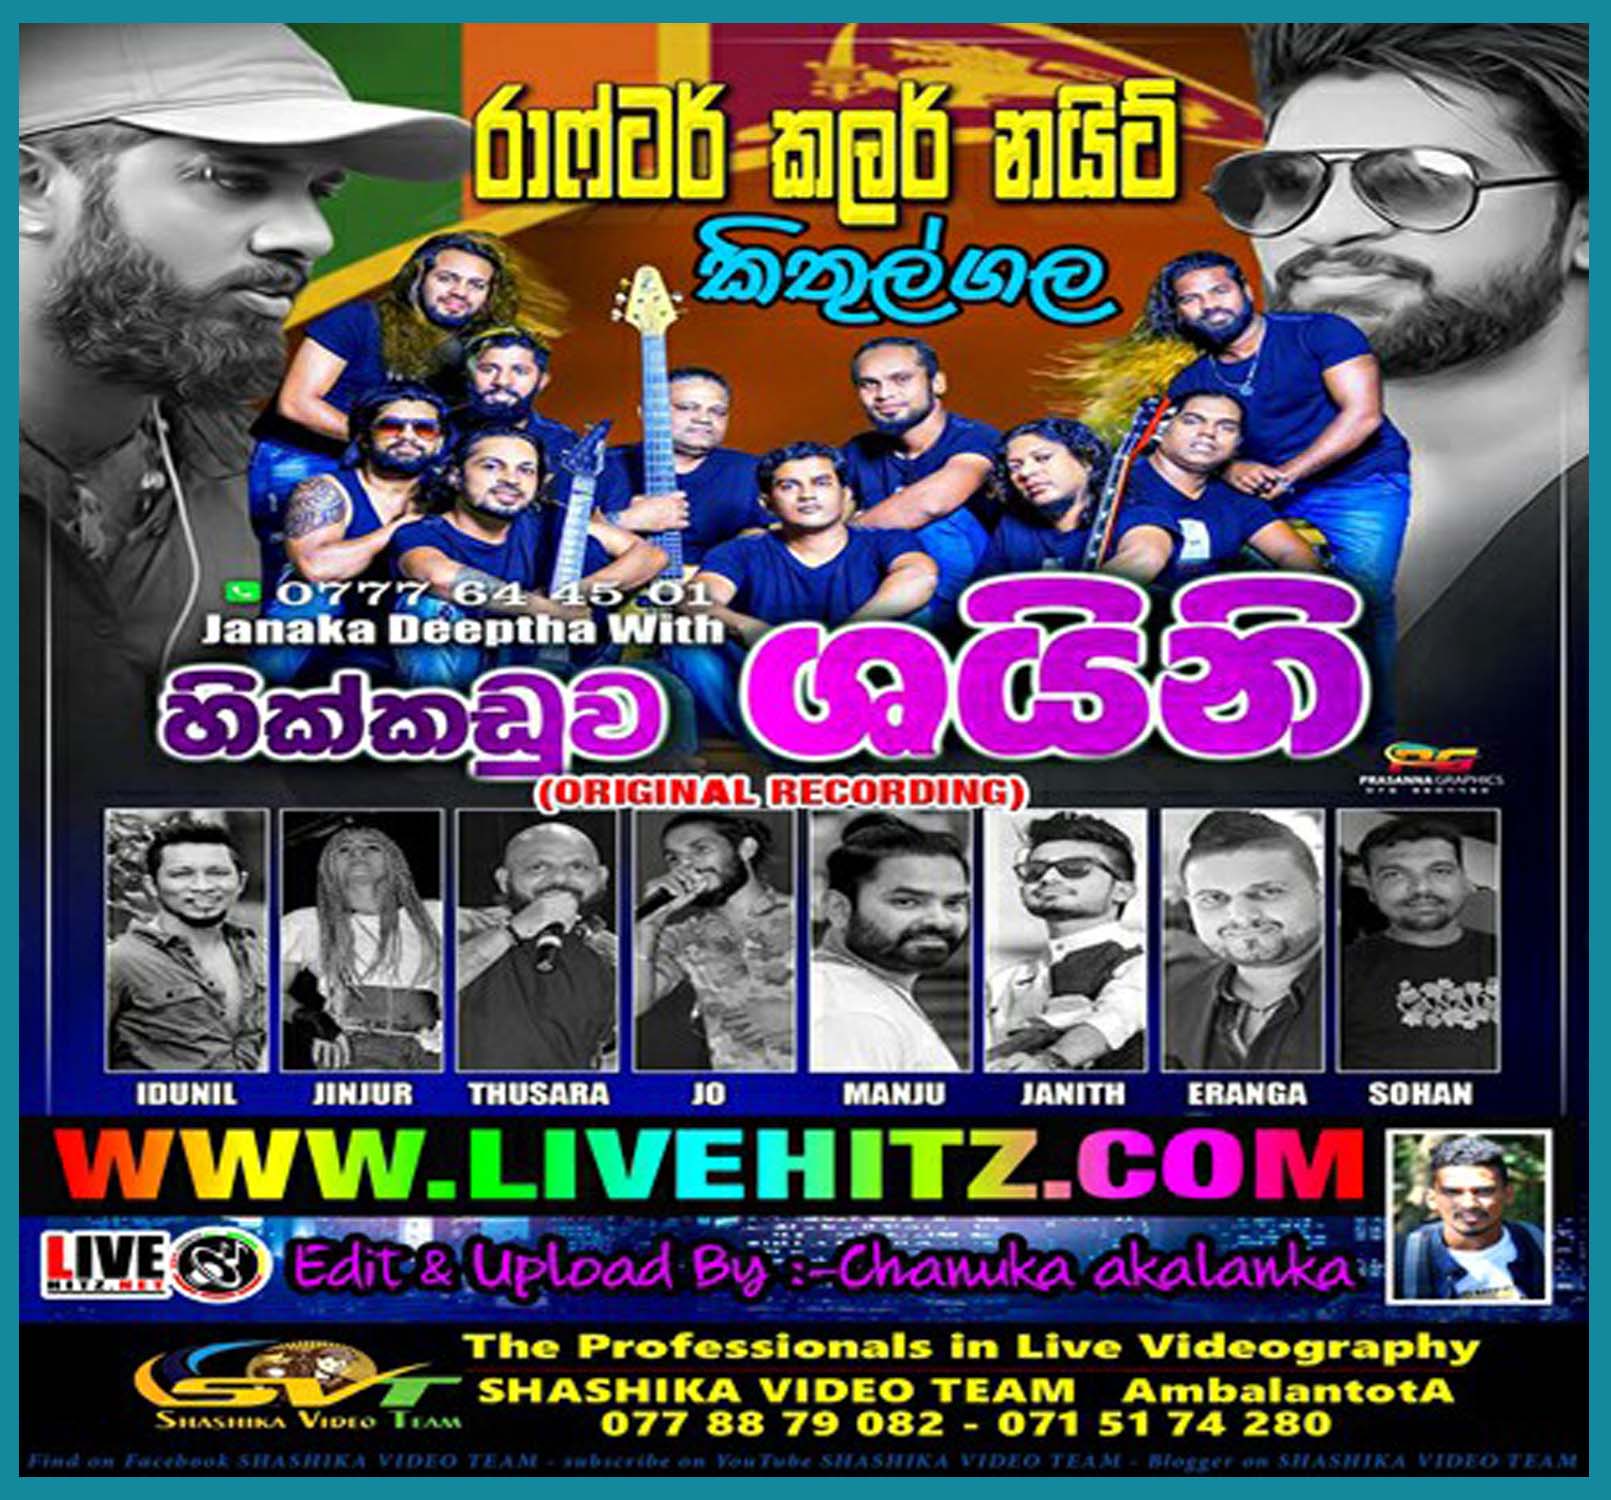 Hikkaduwa Shiny Live In Kithulgala 2020-02-04 Live Show Image